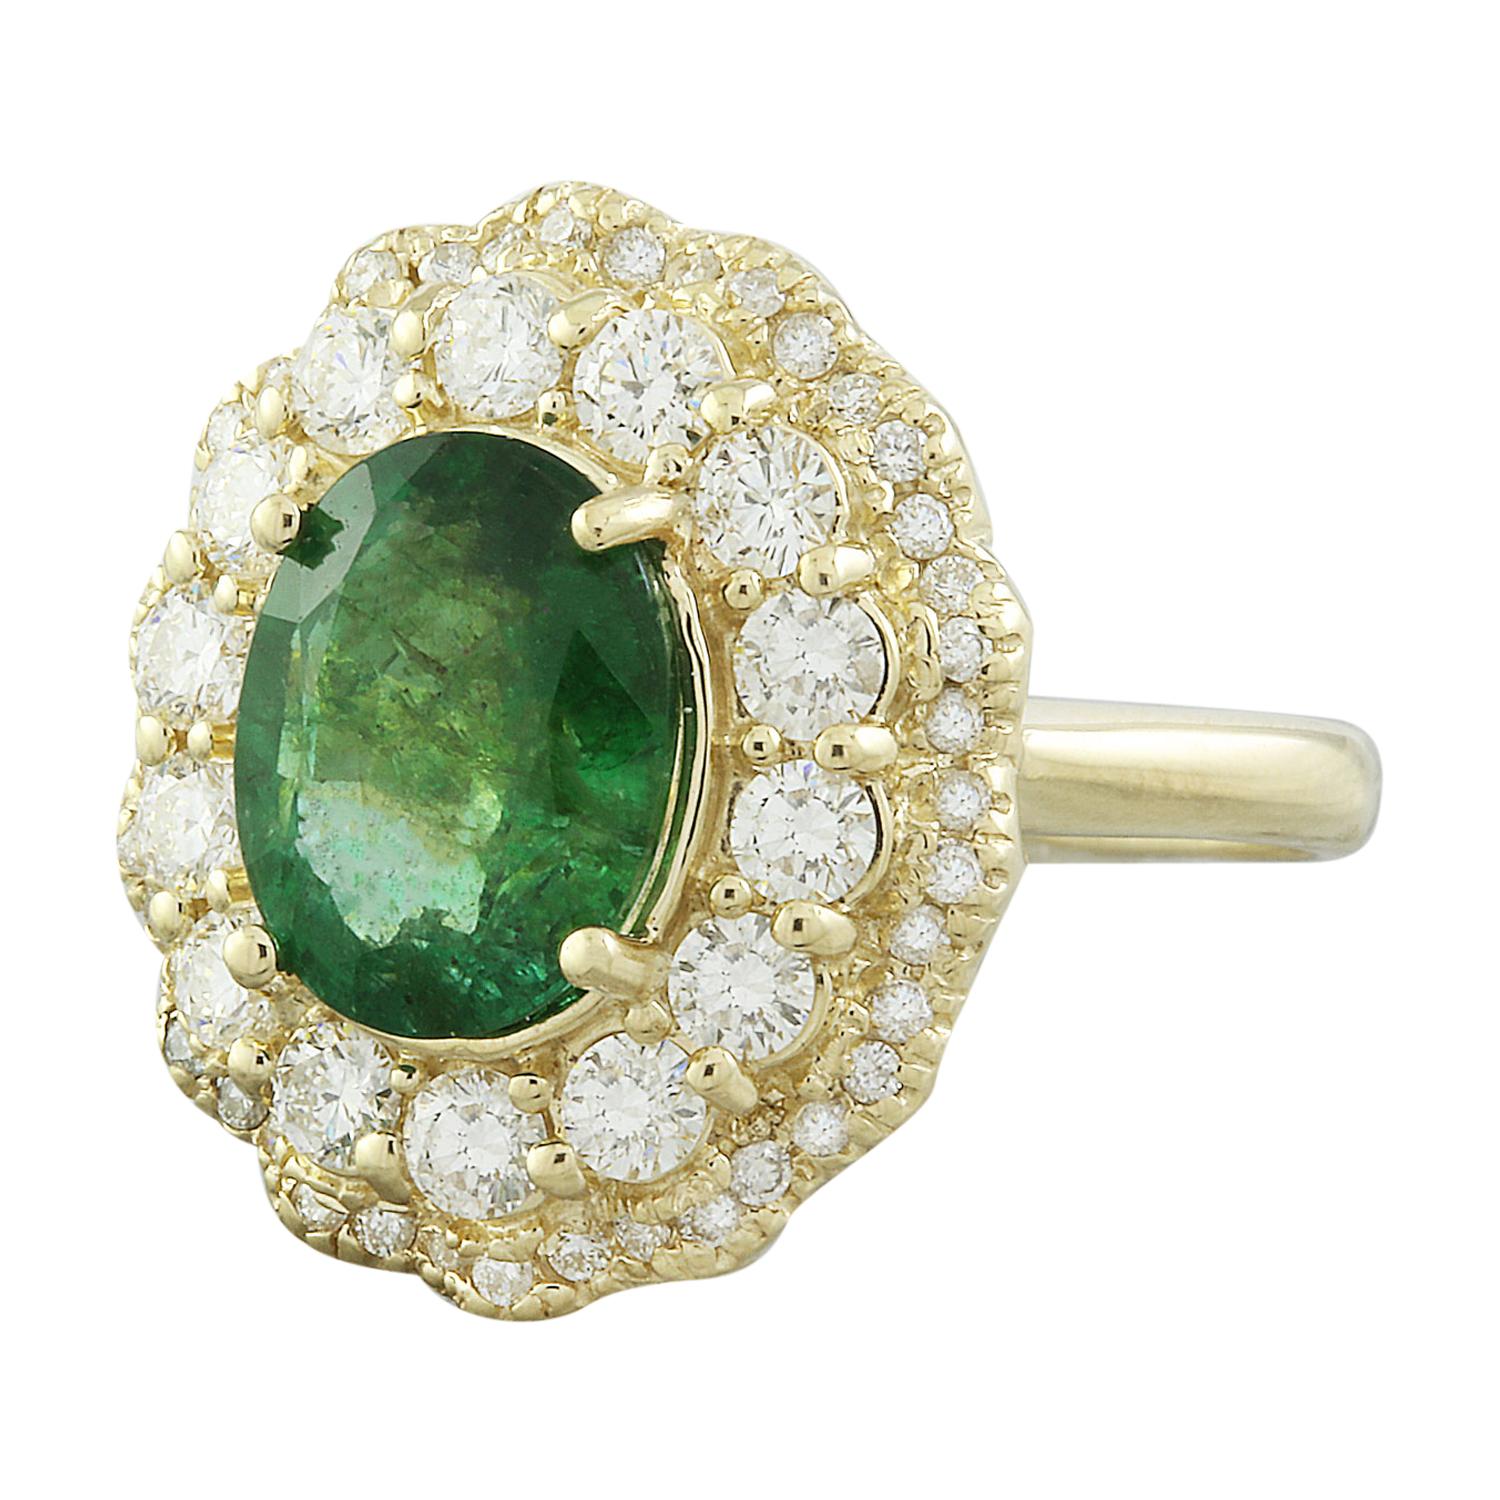 Wir präsentieren unseren atemberaubenden 4,84 Karat Smaragd 14K Solid Yellow Gold Diamond Ring. Dieser Ring aus massivem 14-karätigem Gelbgold hat ein Gesamtgewicht von 8 Gramm und garantiert Qualität und Haltbarkeit. Im Mittelpunkt steht ein